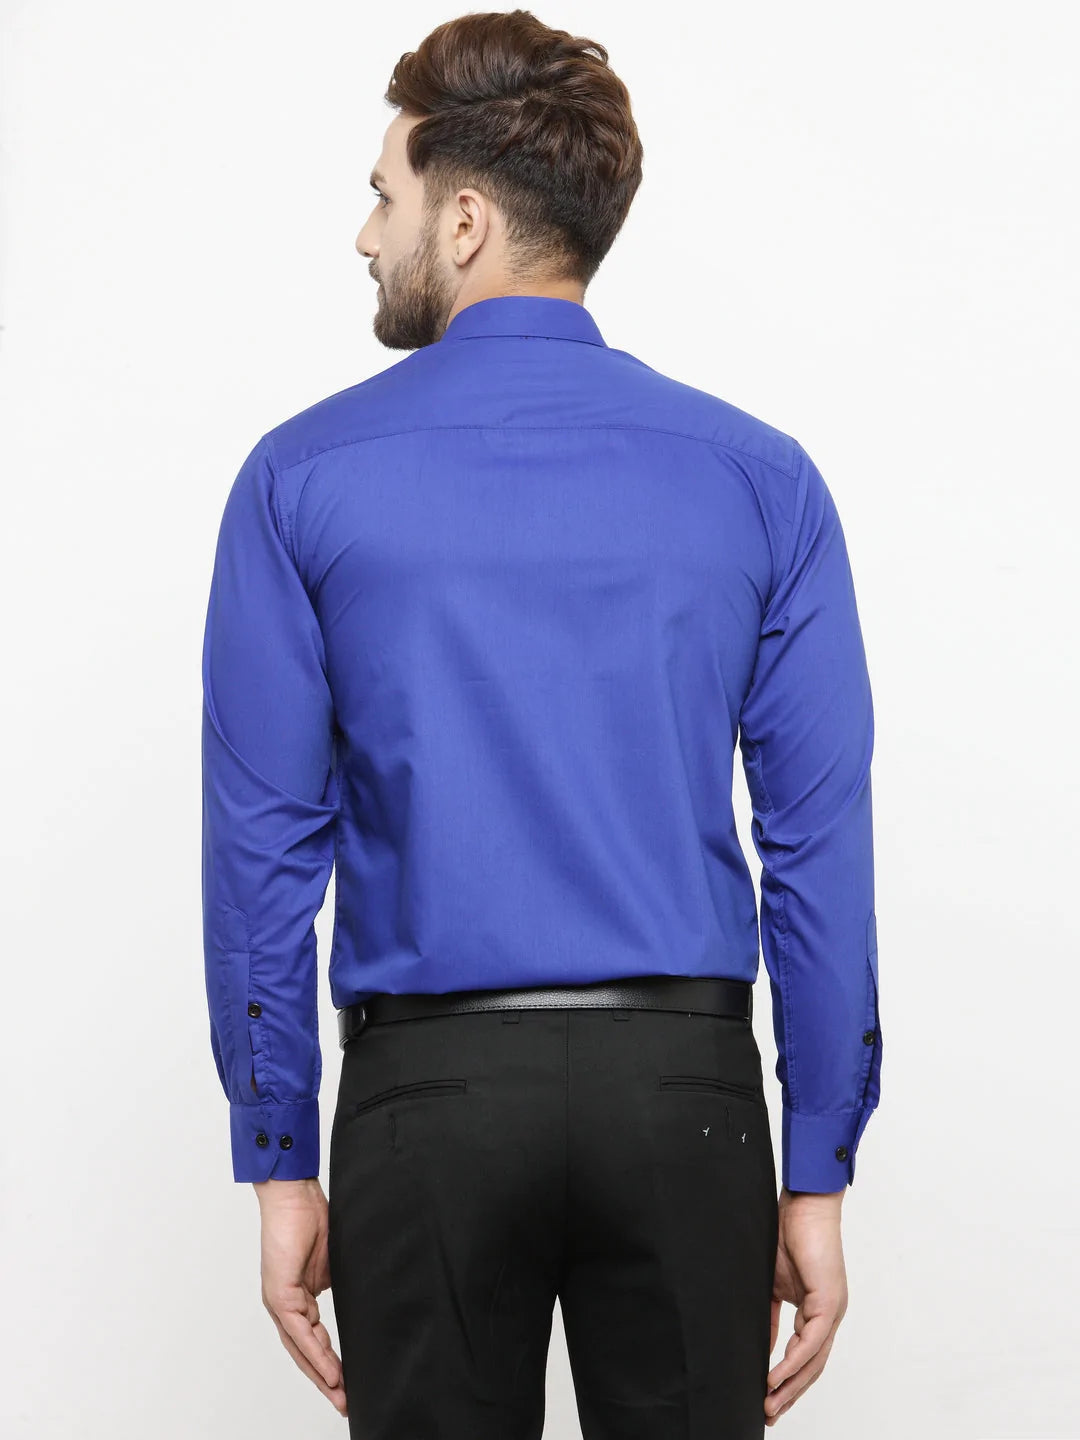 Jainish Royal Blue Formal Shirt with black detailing ( SF 411Royal-Blue )